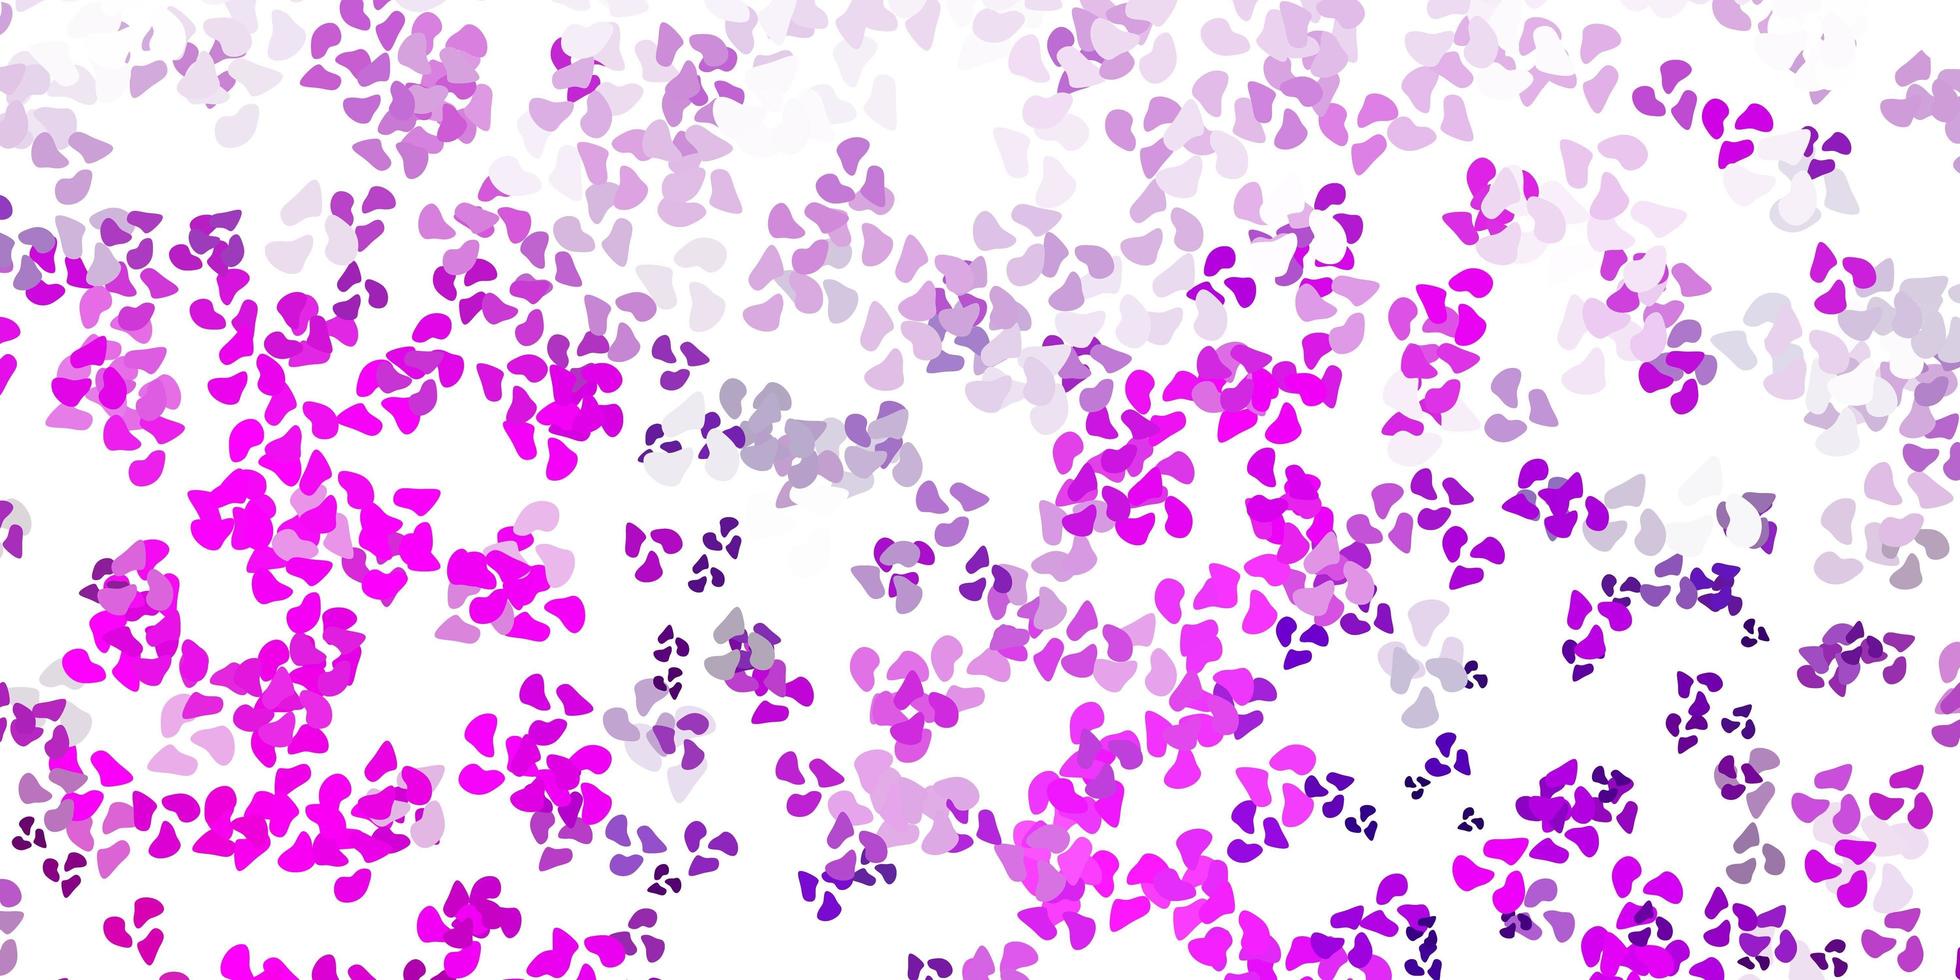 padrão de vetor rosa claro roxo com formas abstratas.